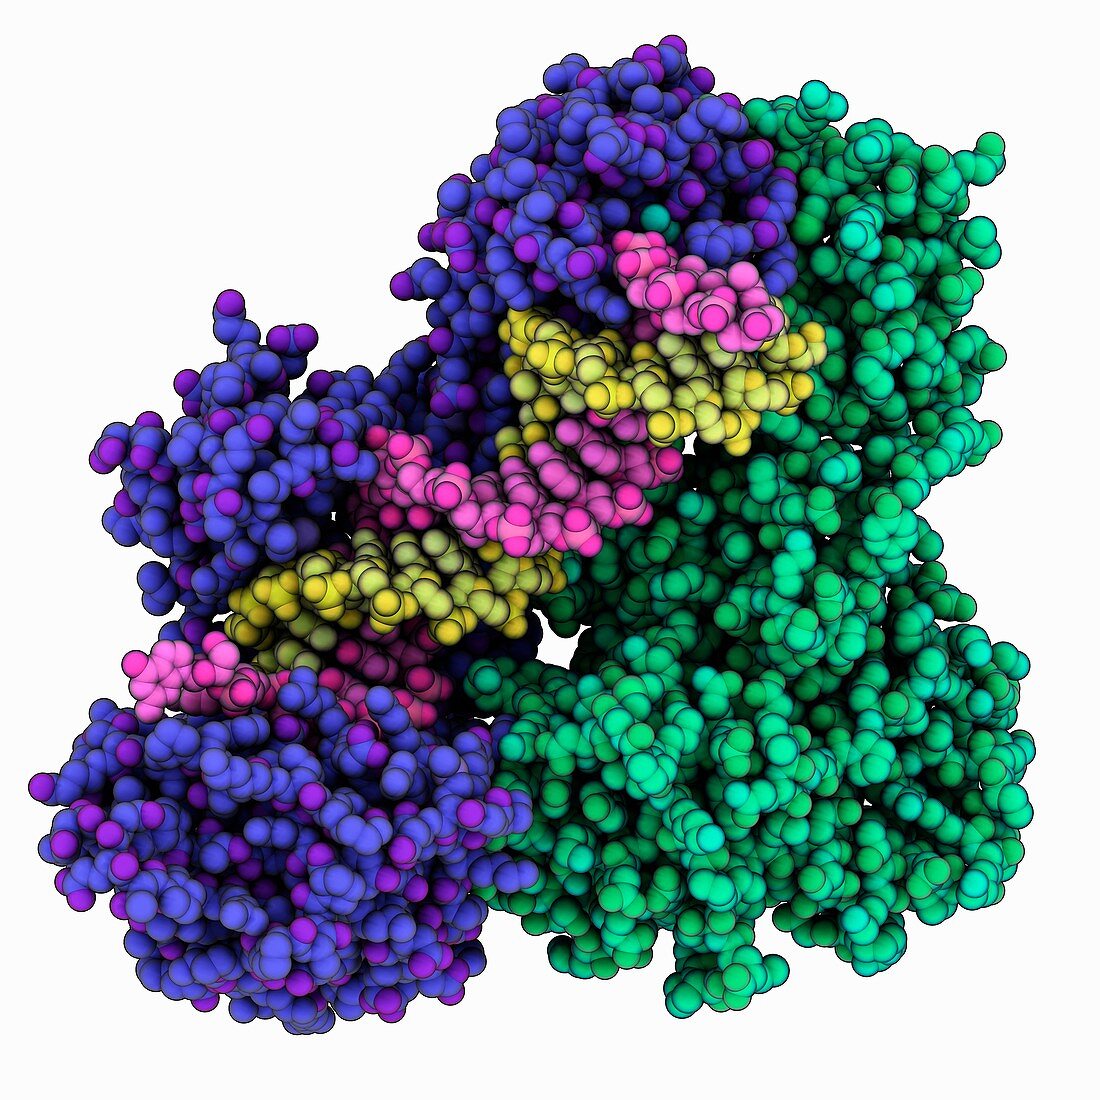 HIV-1 reverse transcriptase complex